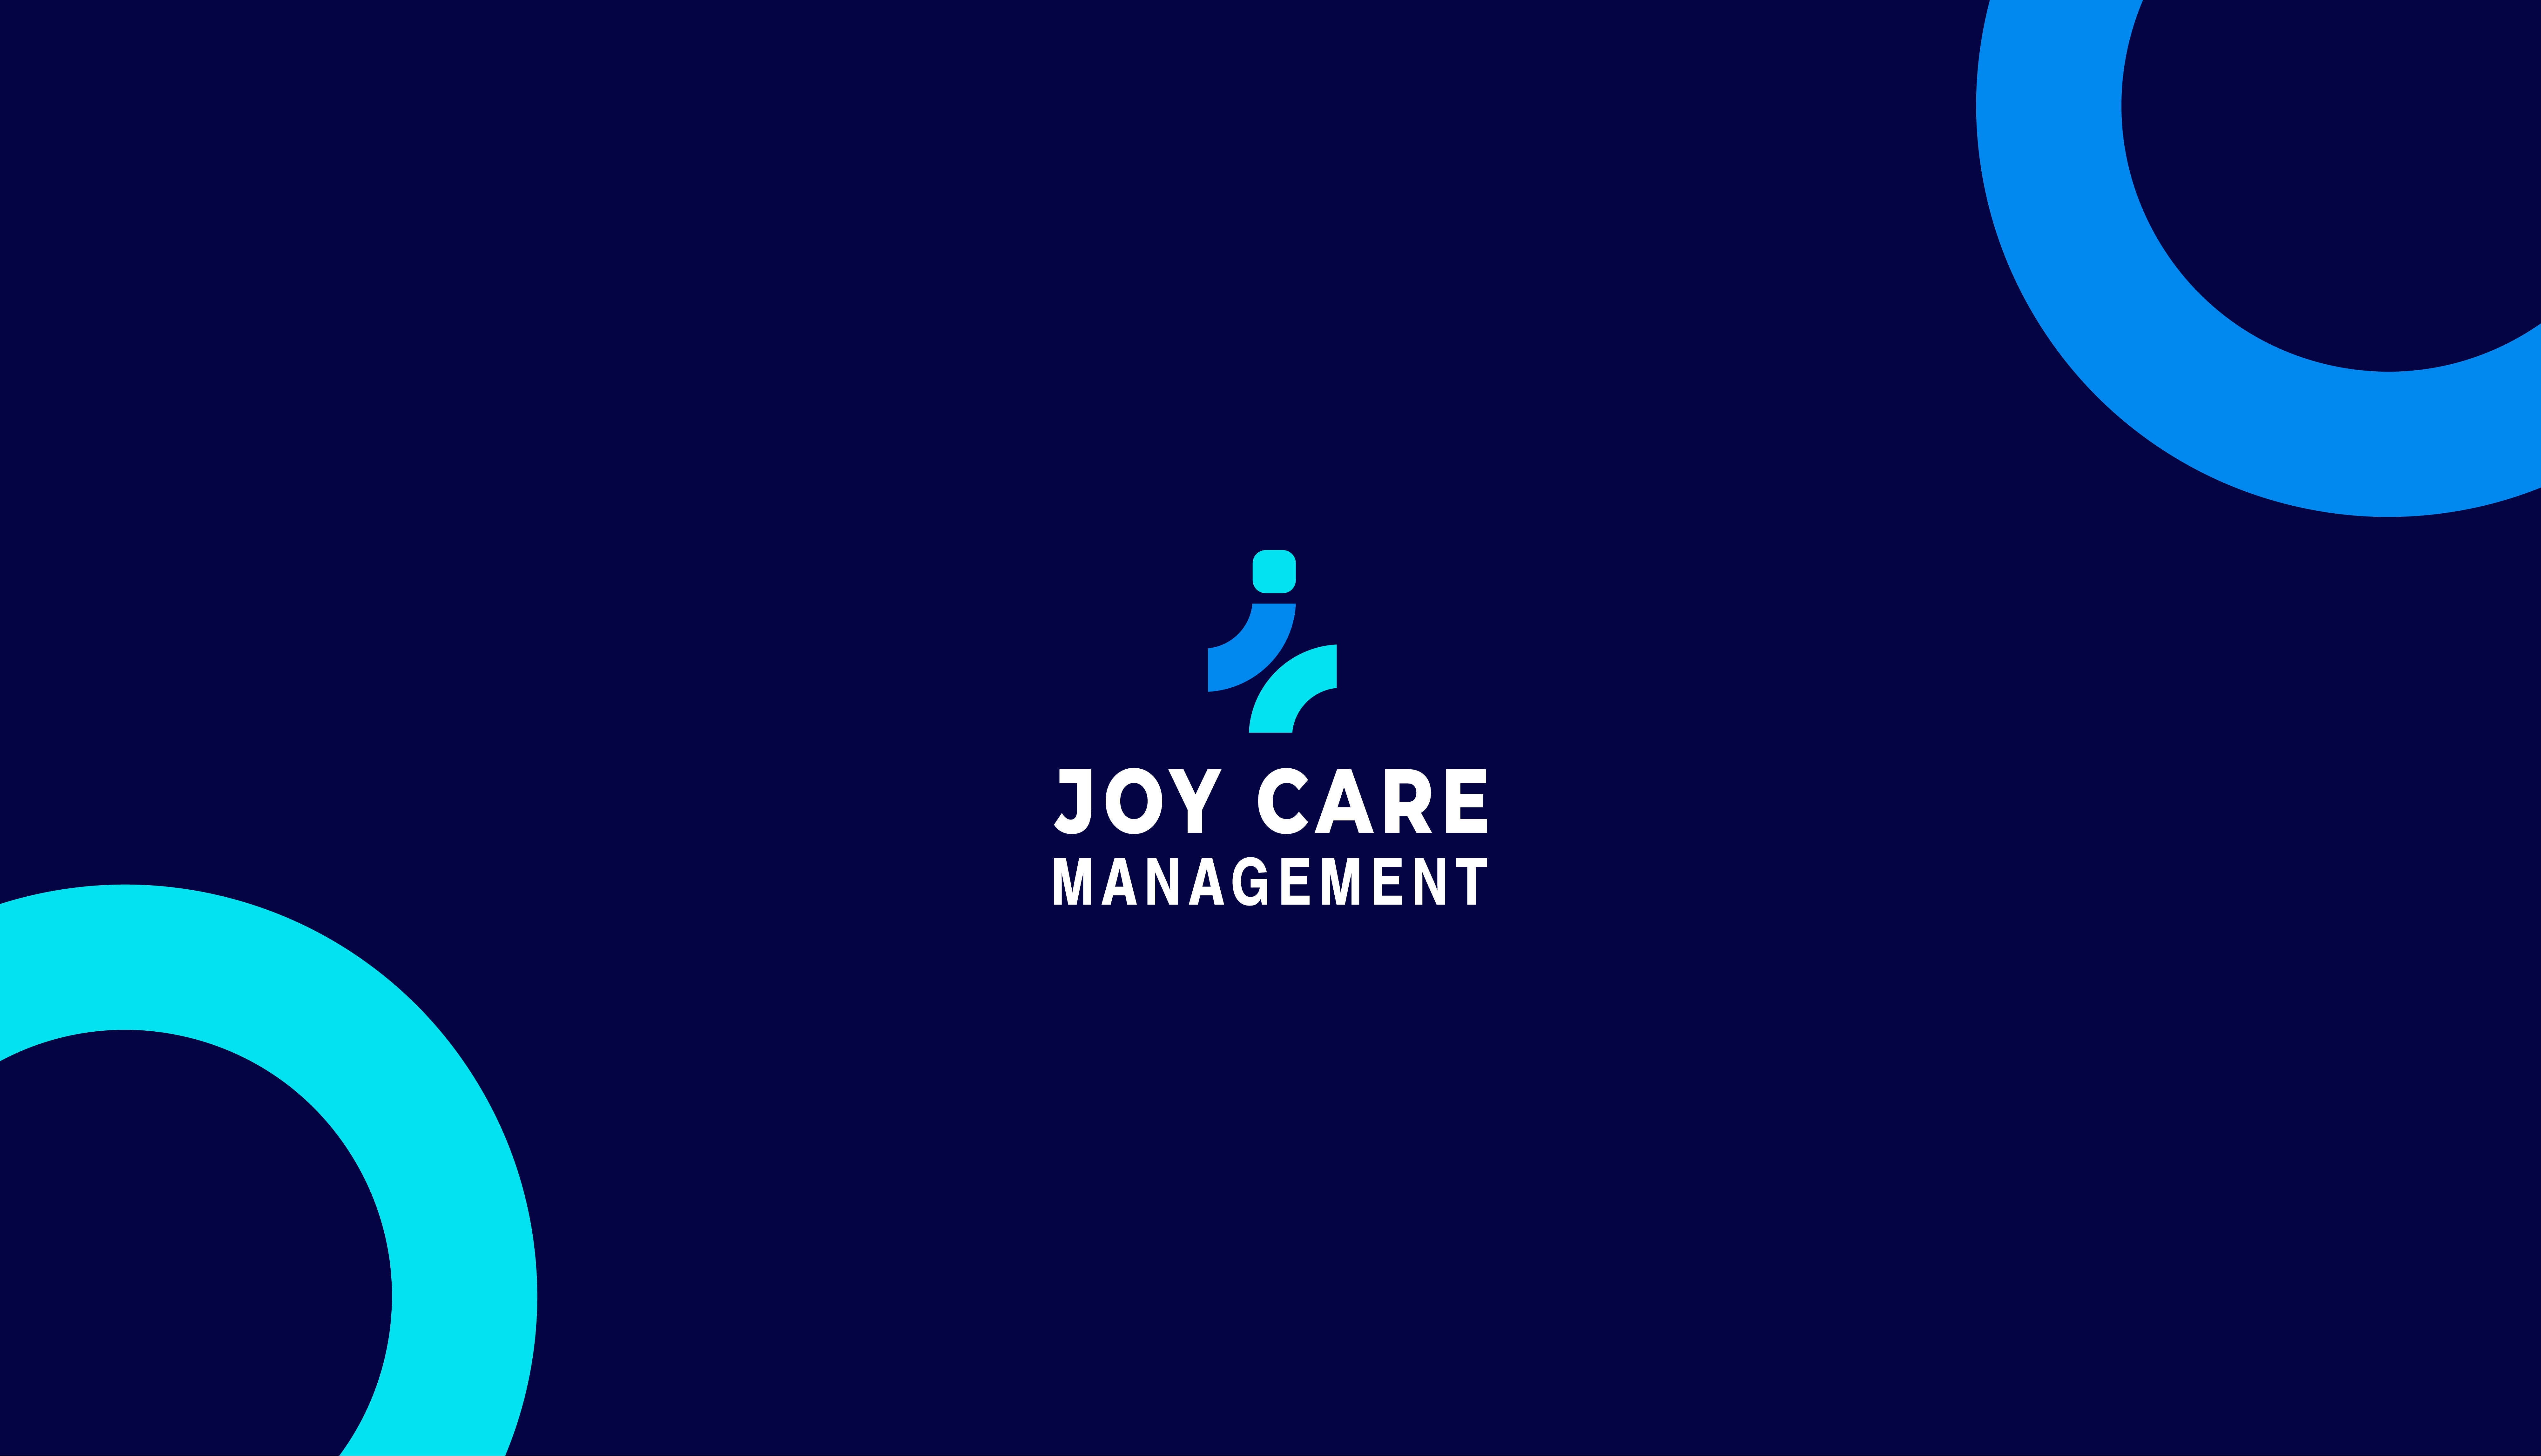 Joy Care Management